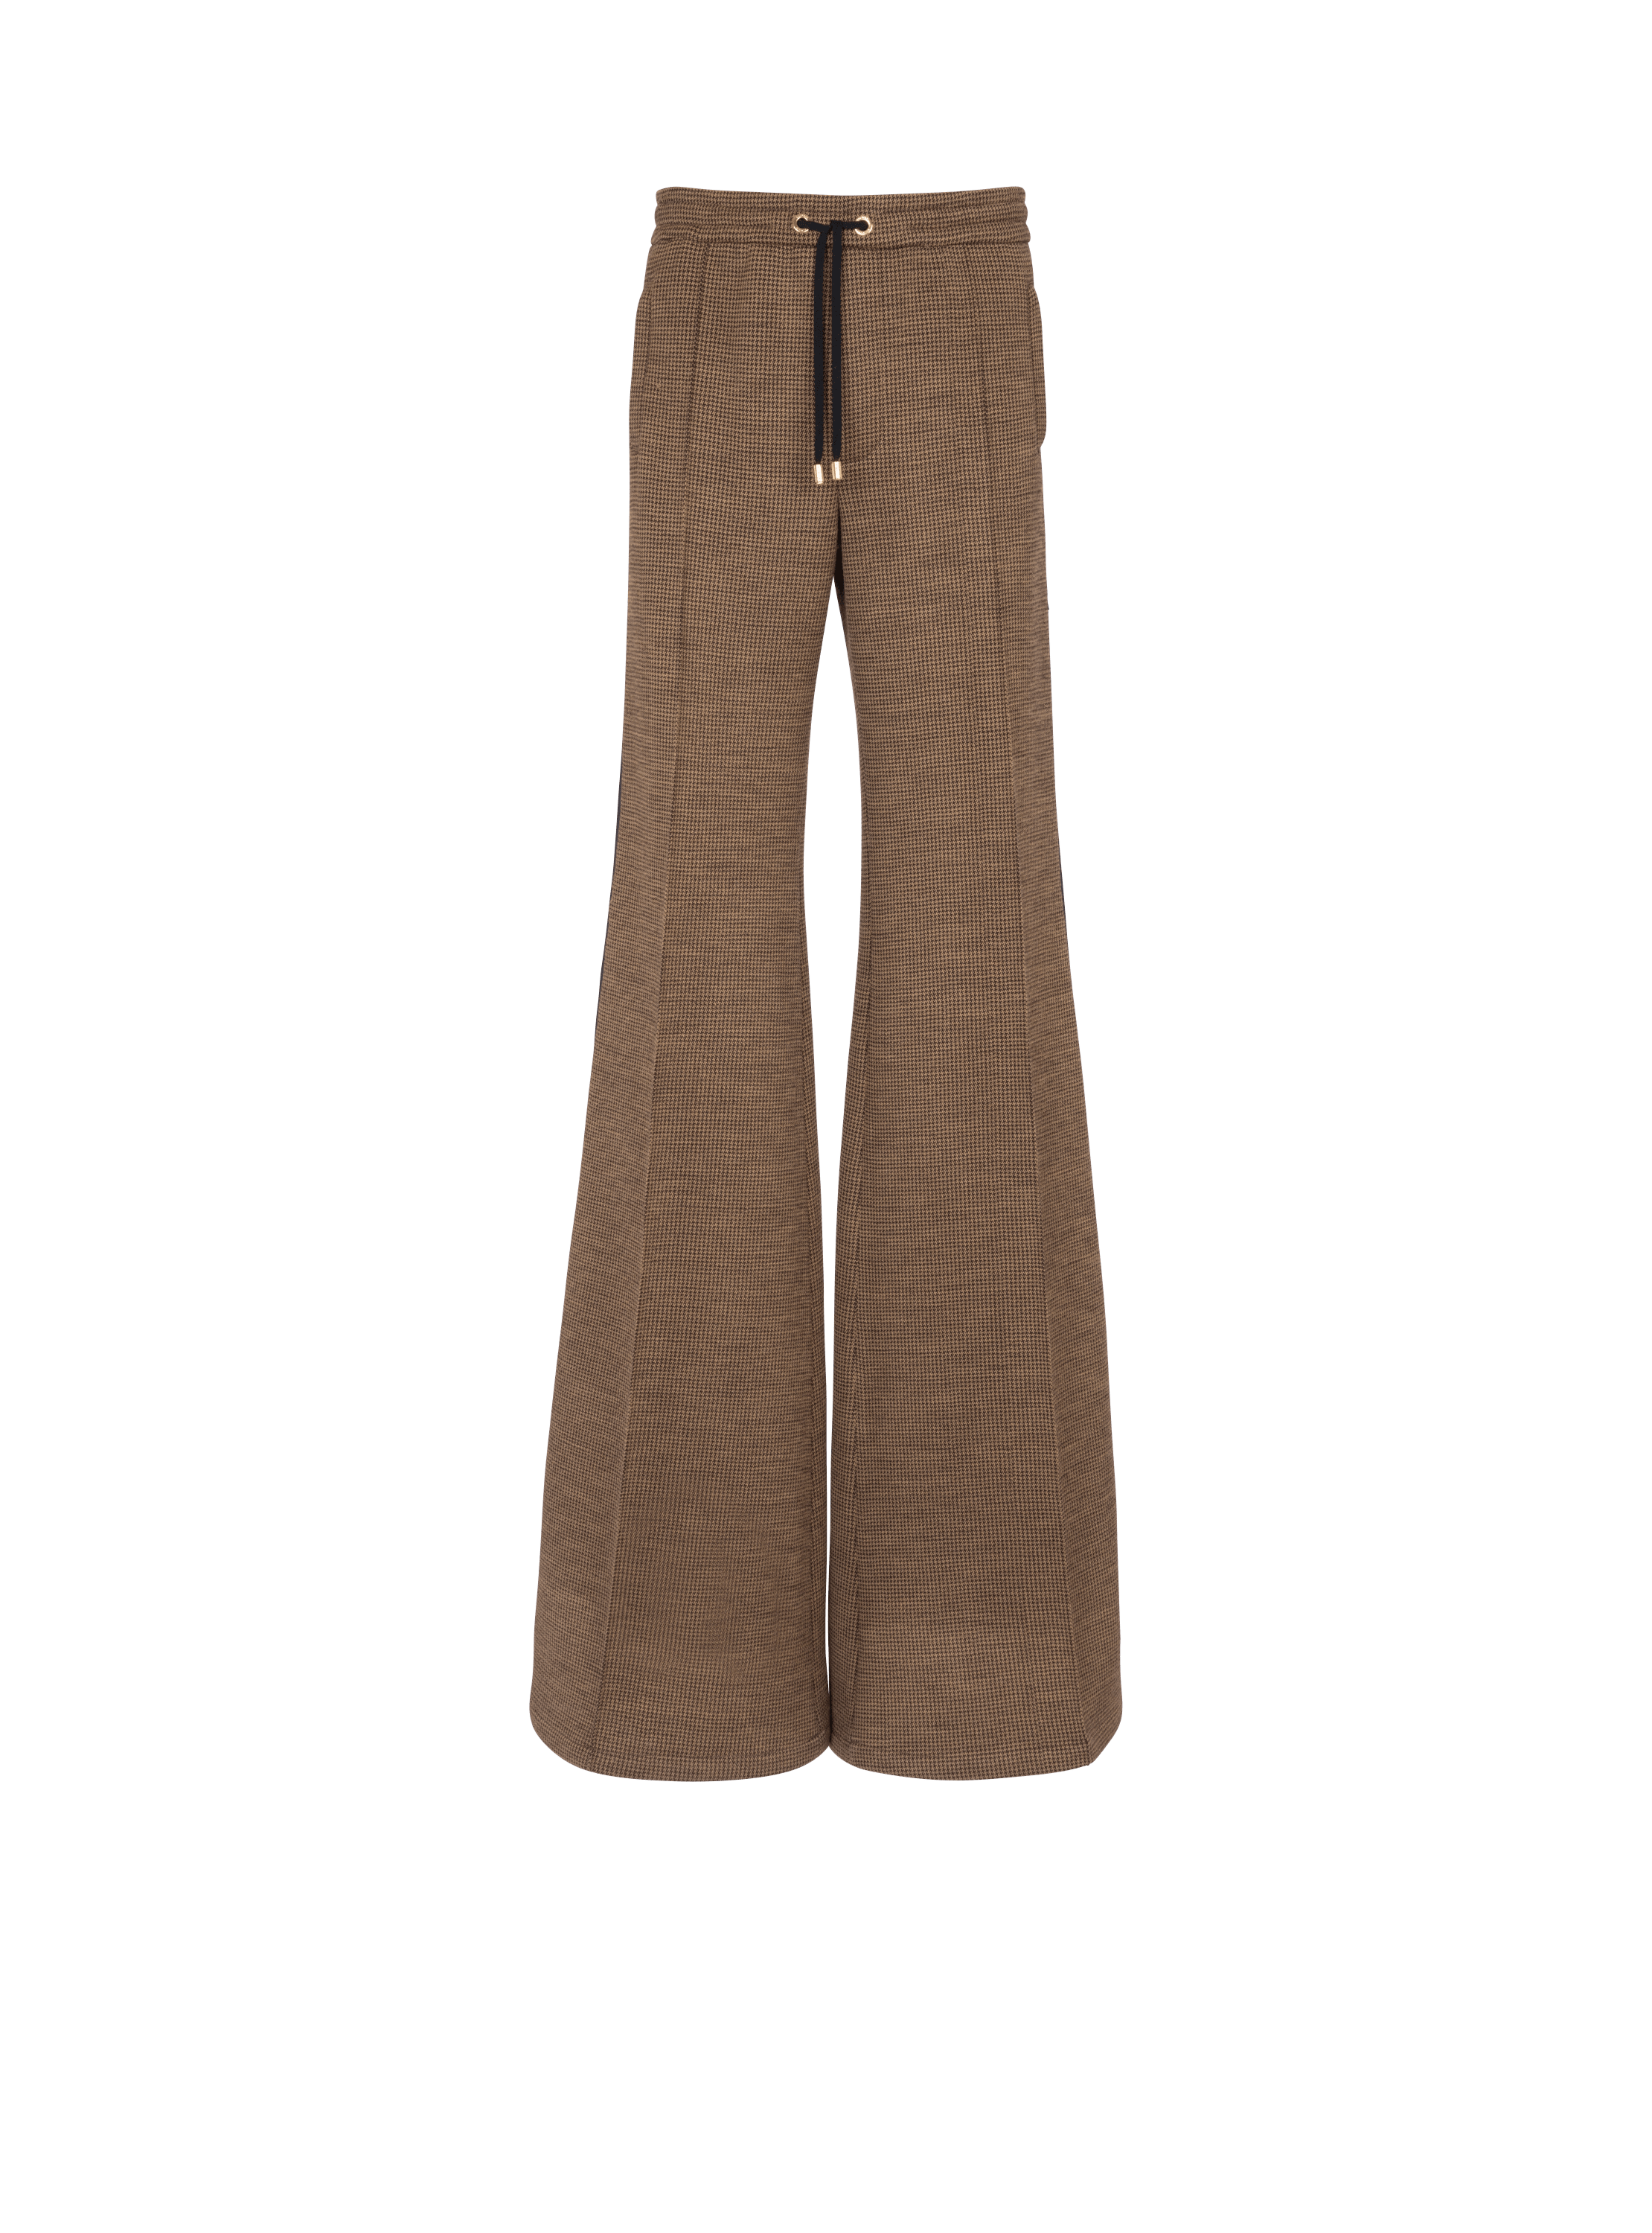 Pantalón tipo informal de jacquard de pata de gallo, marrón, hi-res